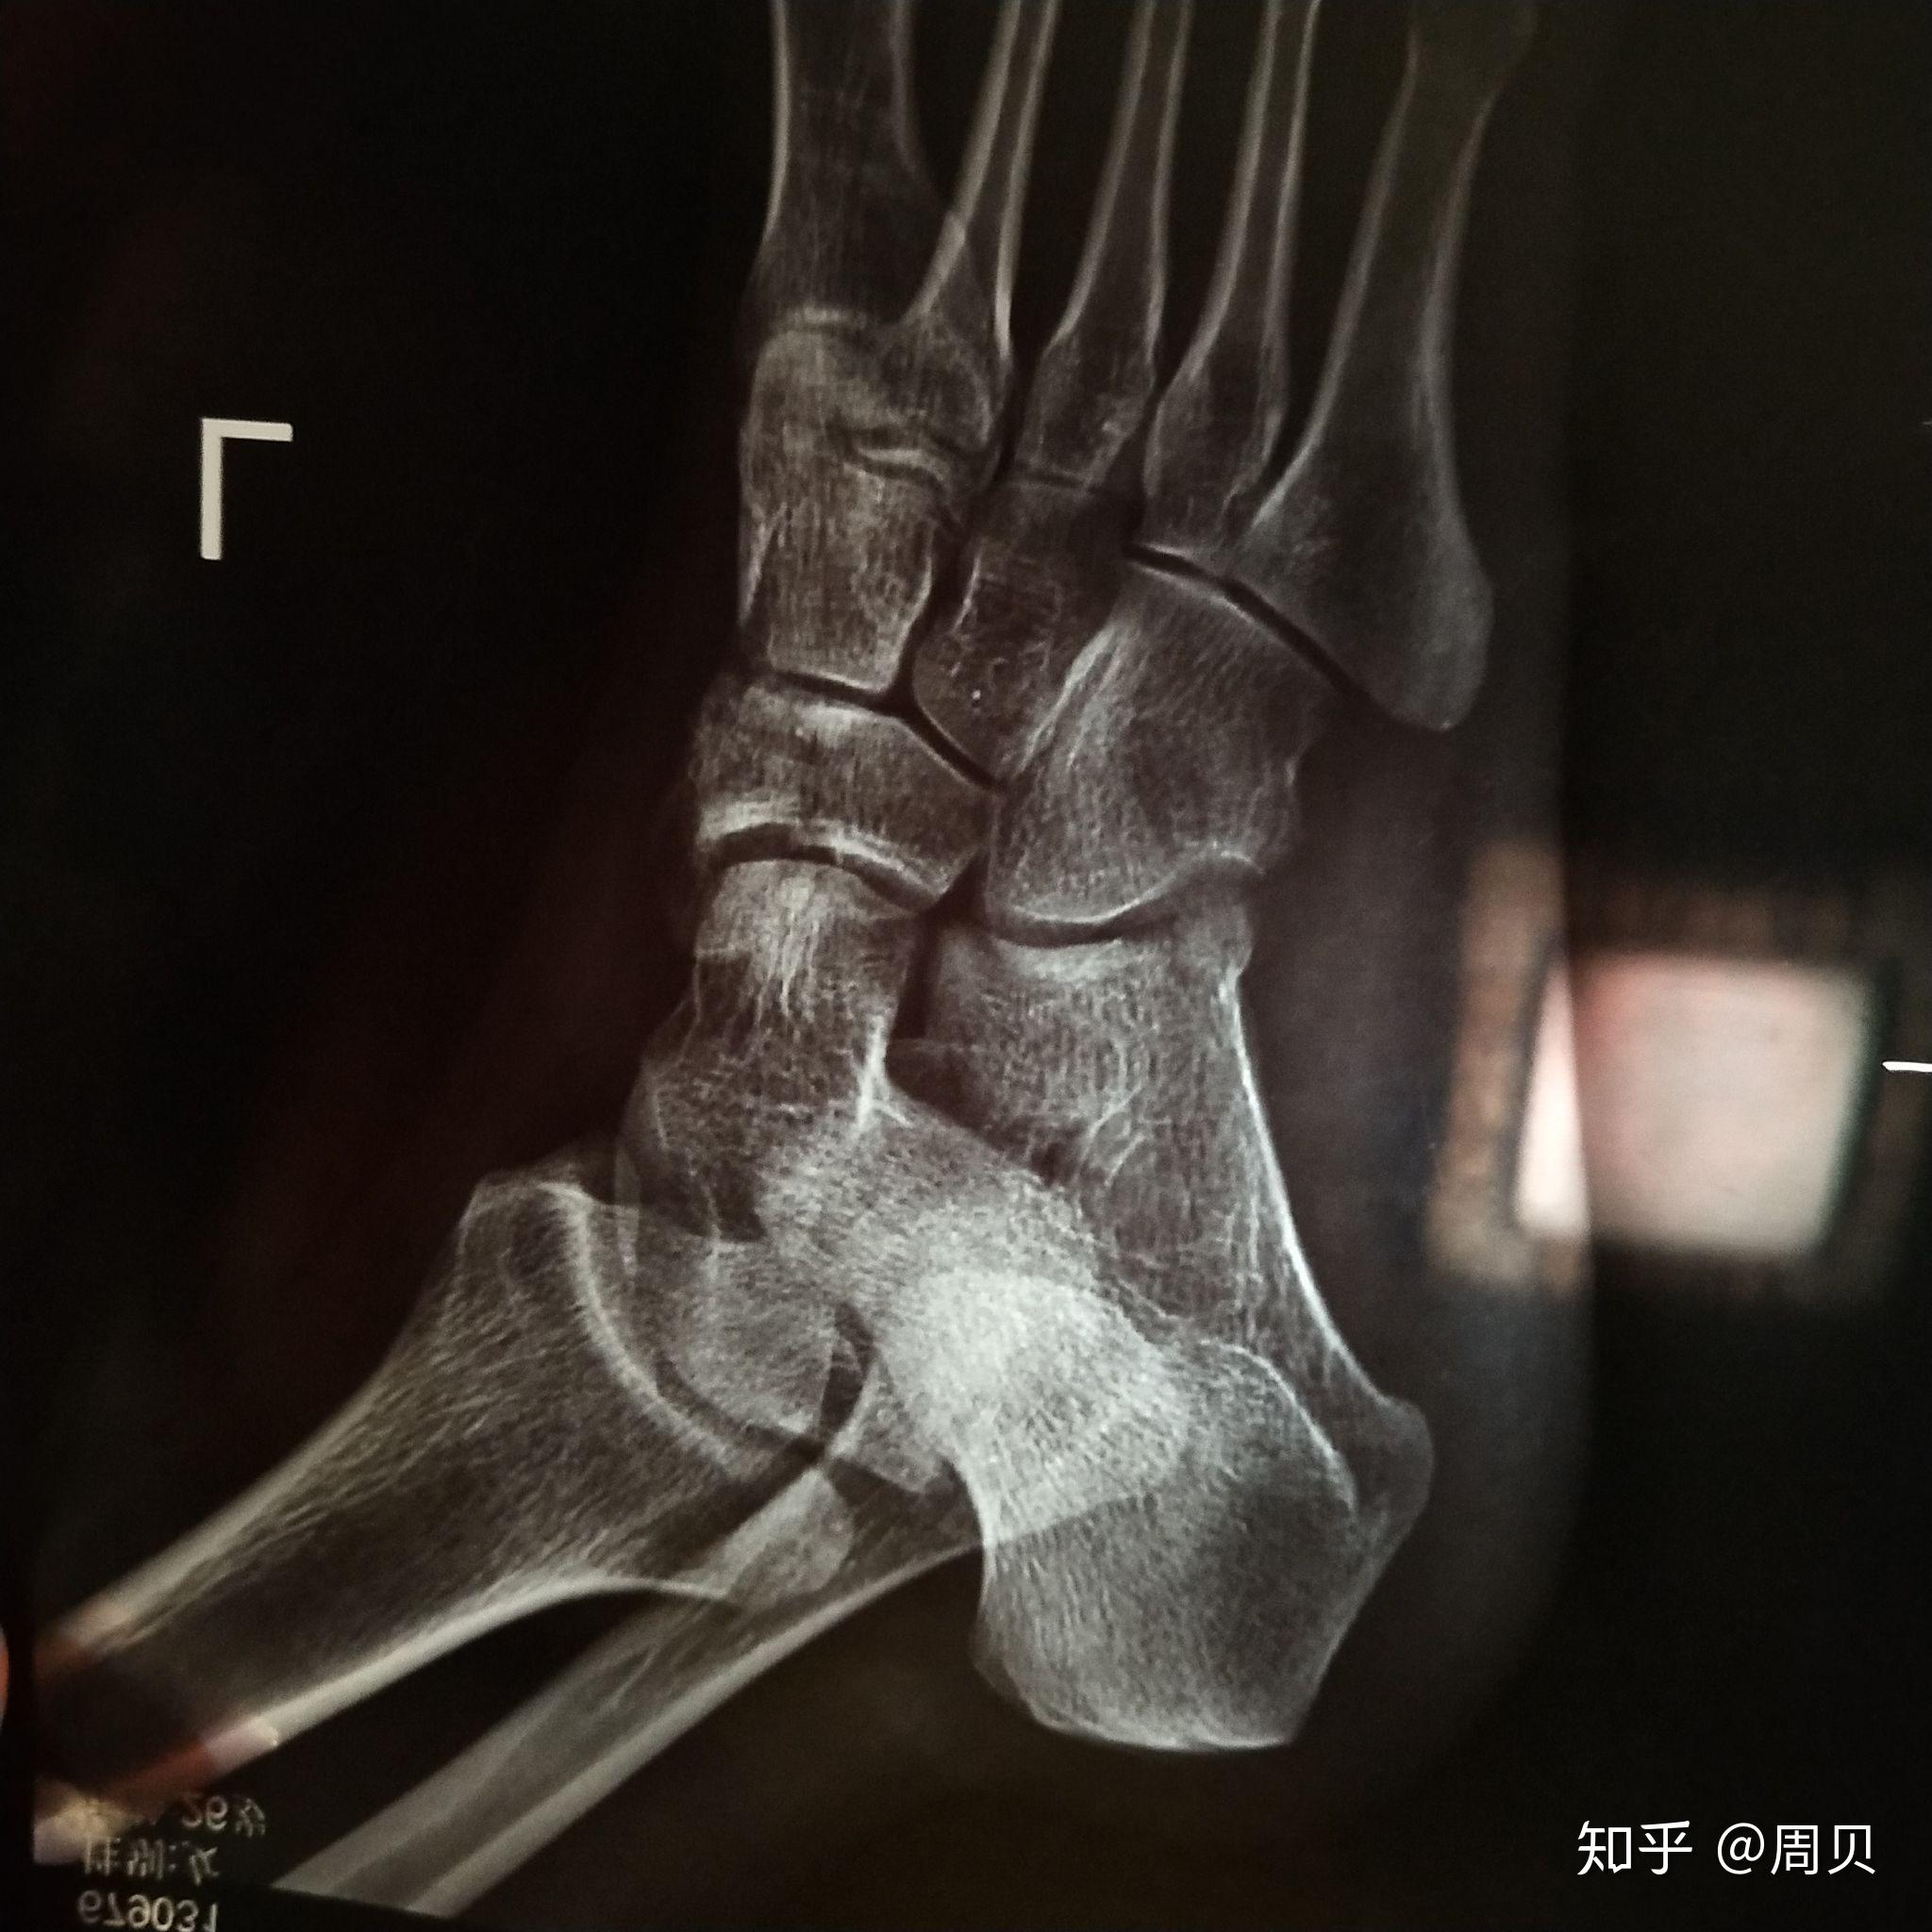 『8分钟创伤』舟状骨骨折固定方案详解，看完的人都收藏了！ - 上海开为医药科技有限公司--创伤、肢体矫形技术解决方案的专业服务商